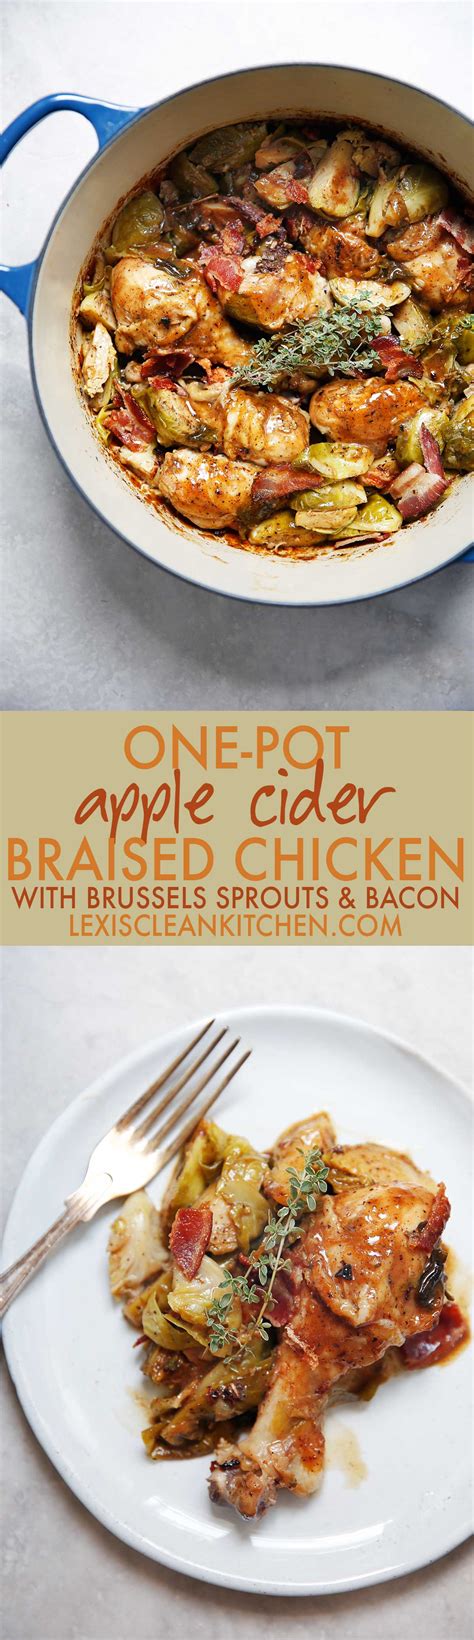 braised-apple-cider-chicken-dinner-lexis-clean-kitchen image